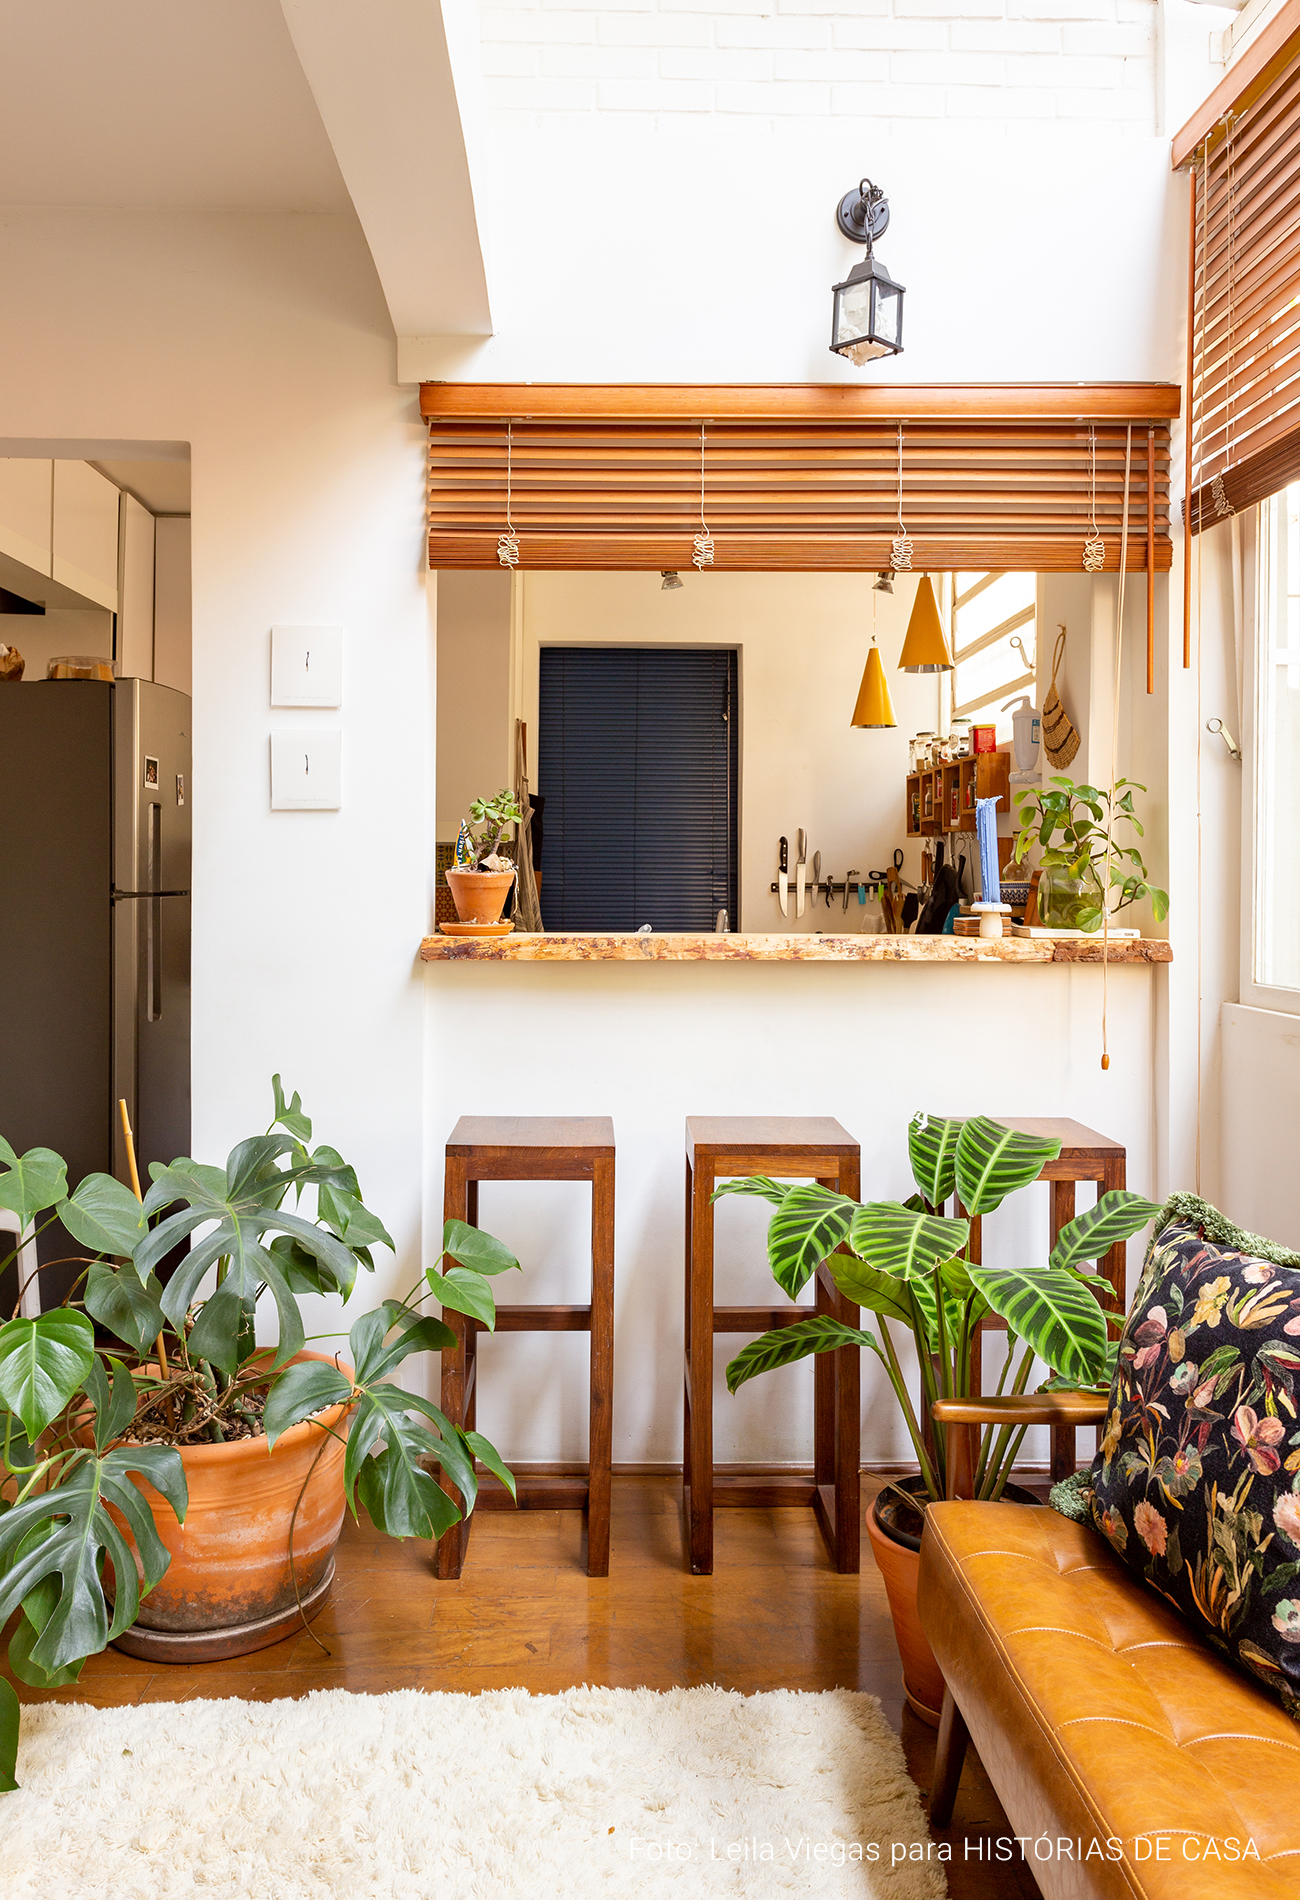 Apartamento acolhedor com plantas, cores neutras e claraboia